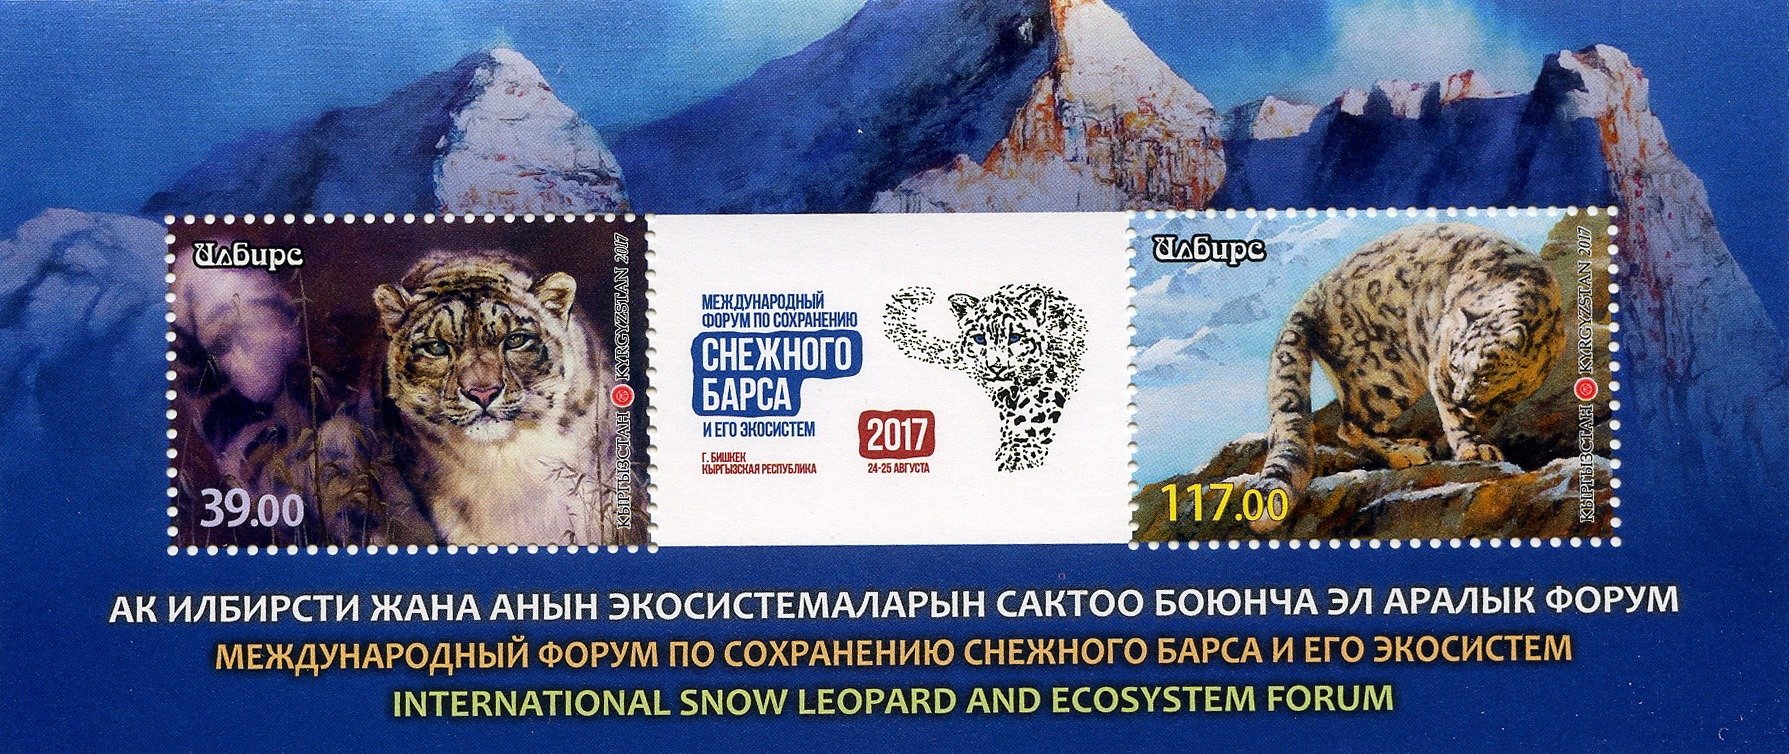 Плакат в поддержку снежного барса сохранения численности. Киргизские загадки. Марки Киргизия фауна 2018 блок. Конференция Киргизия снежного Барса.